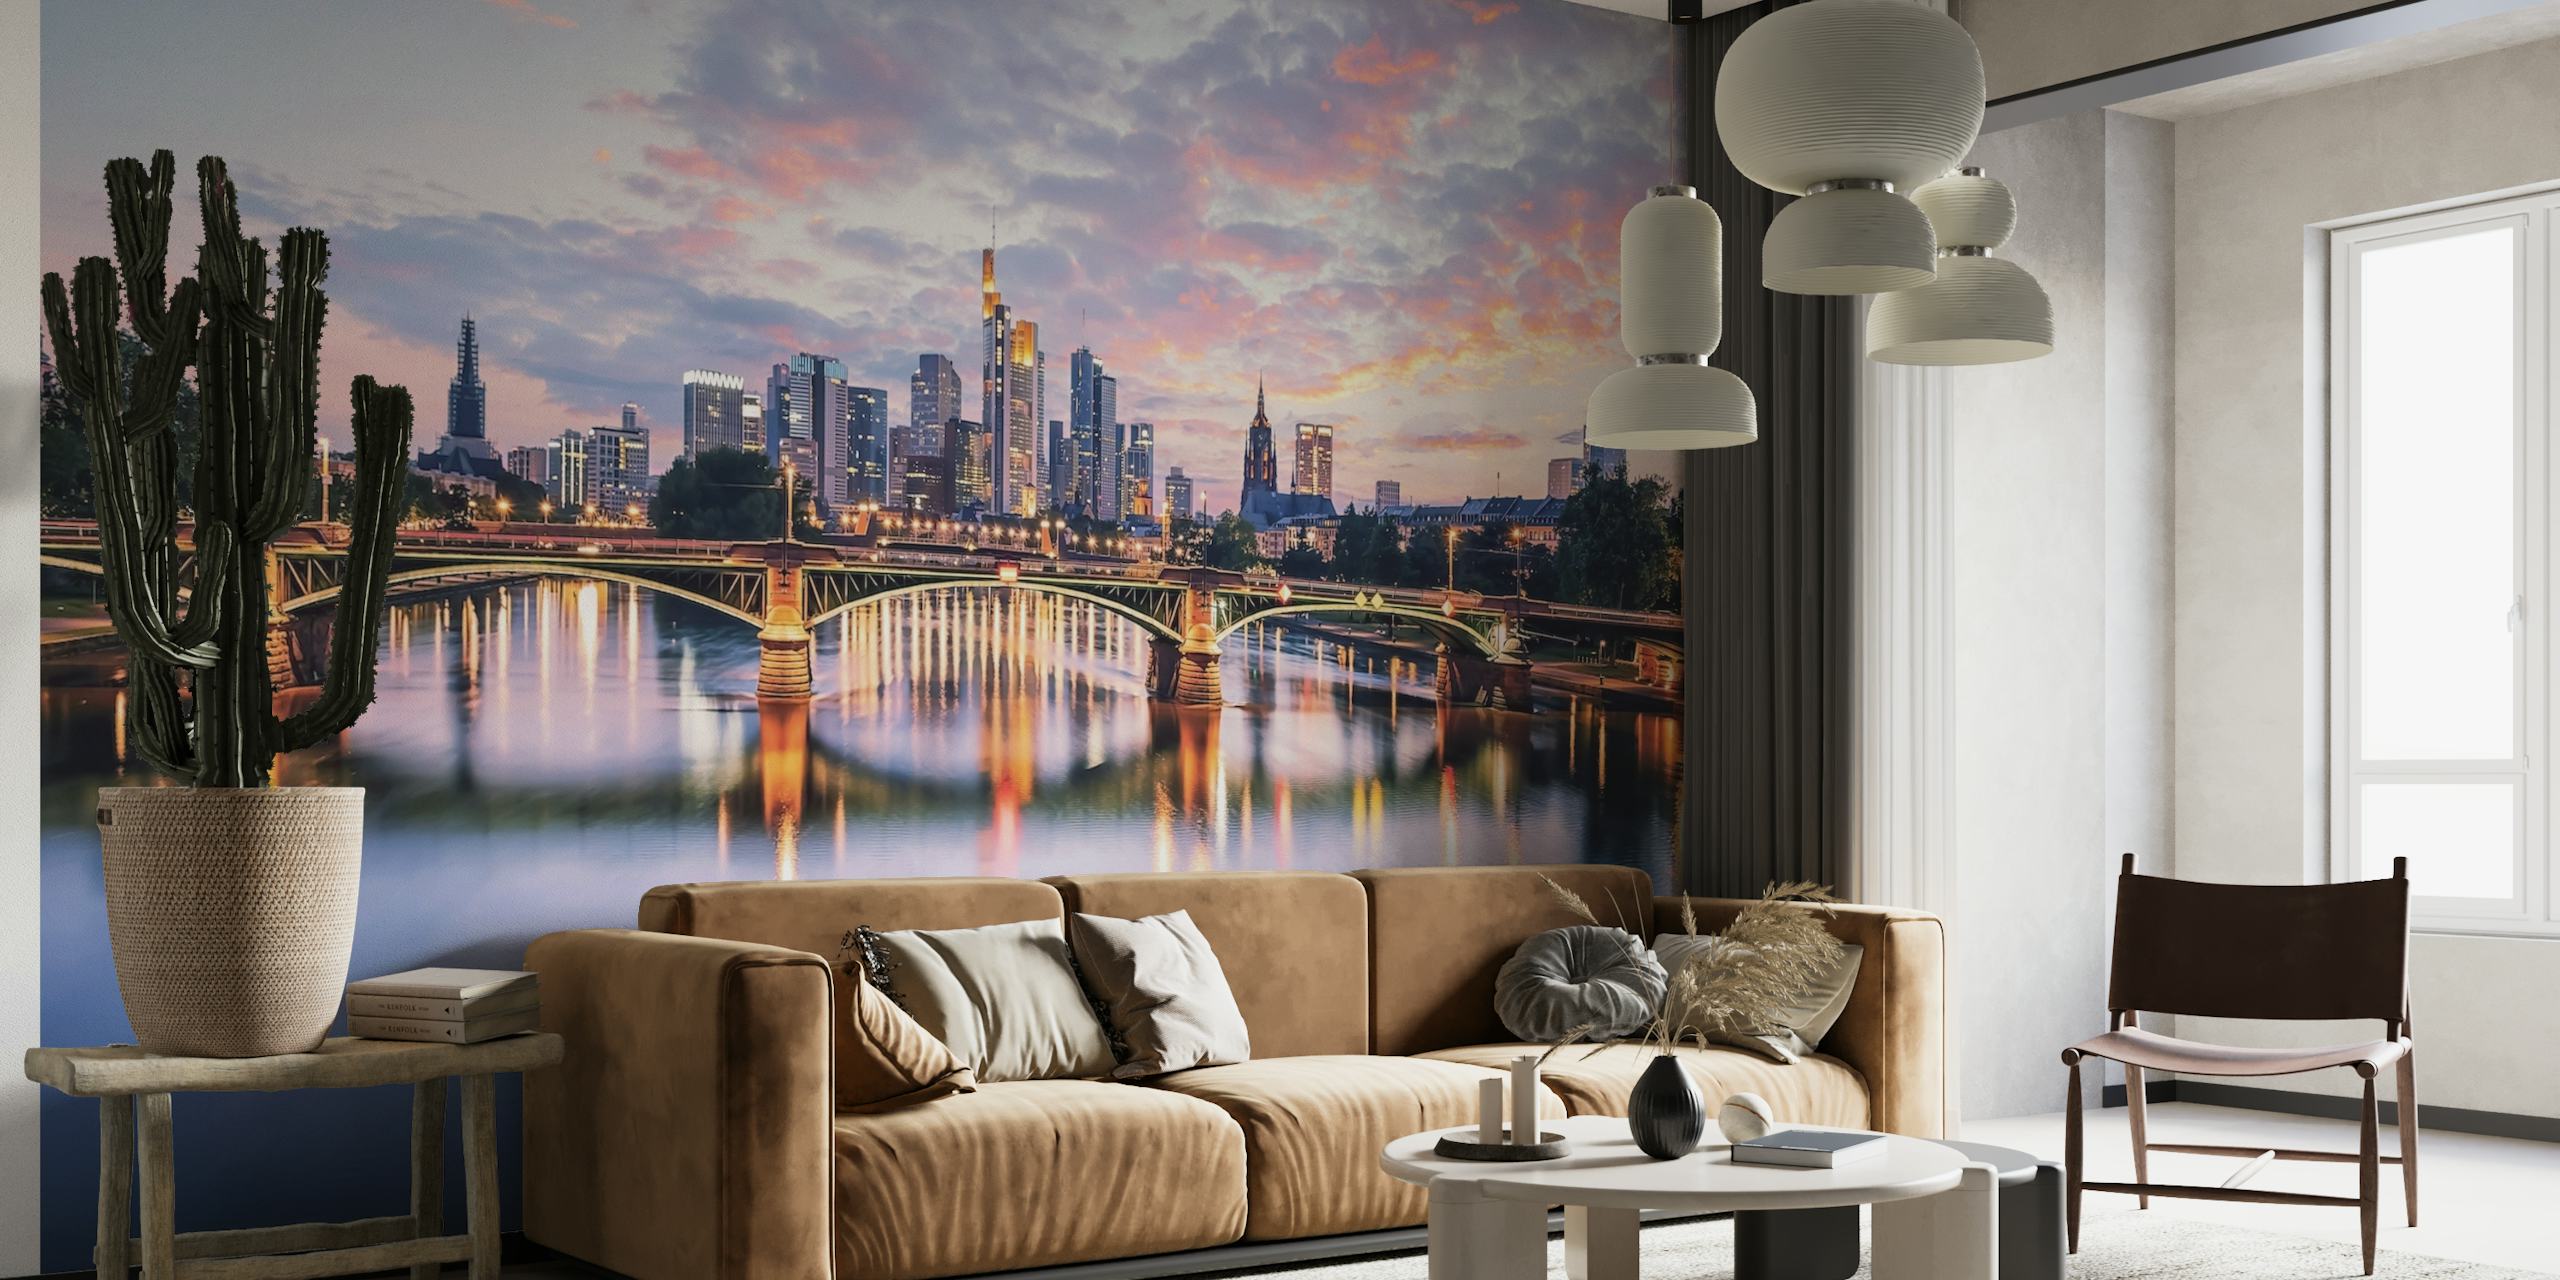 Zonsondergang boven de skyline van Frankfurt met reflecties op de muurschildering aan de rivier de Main